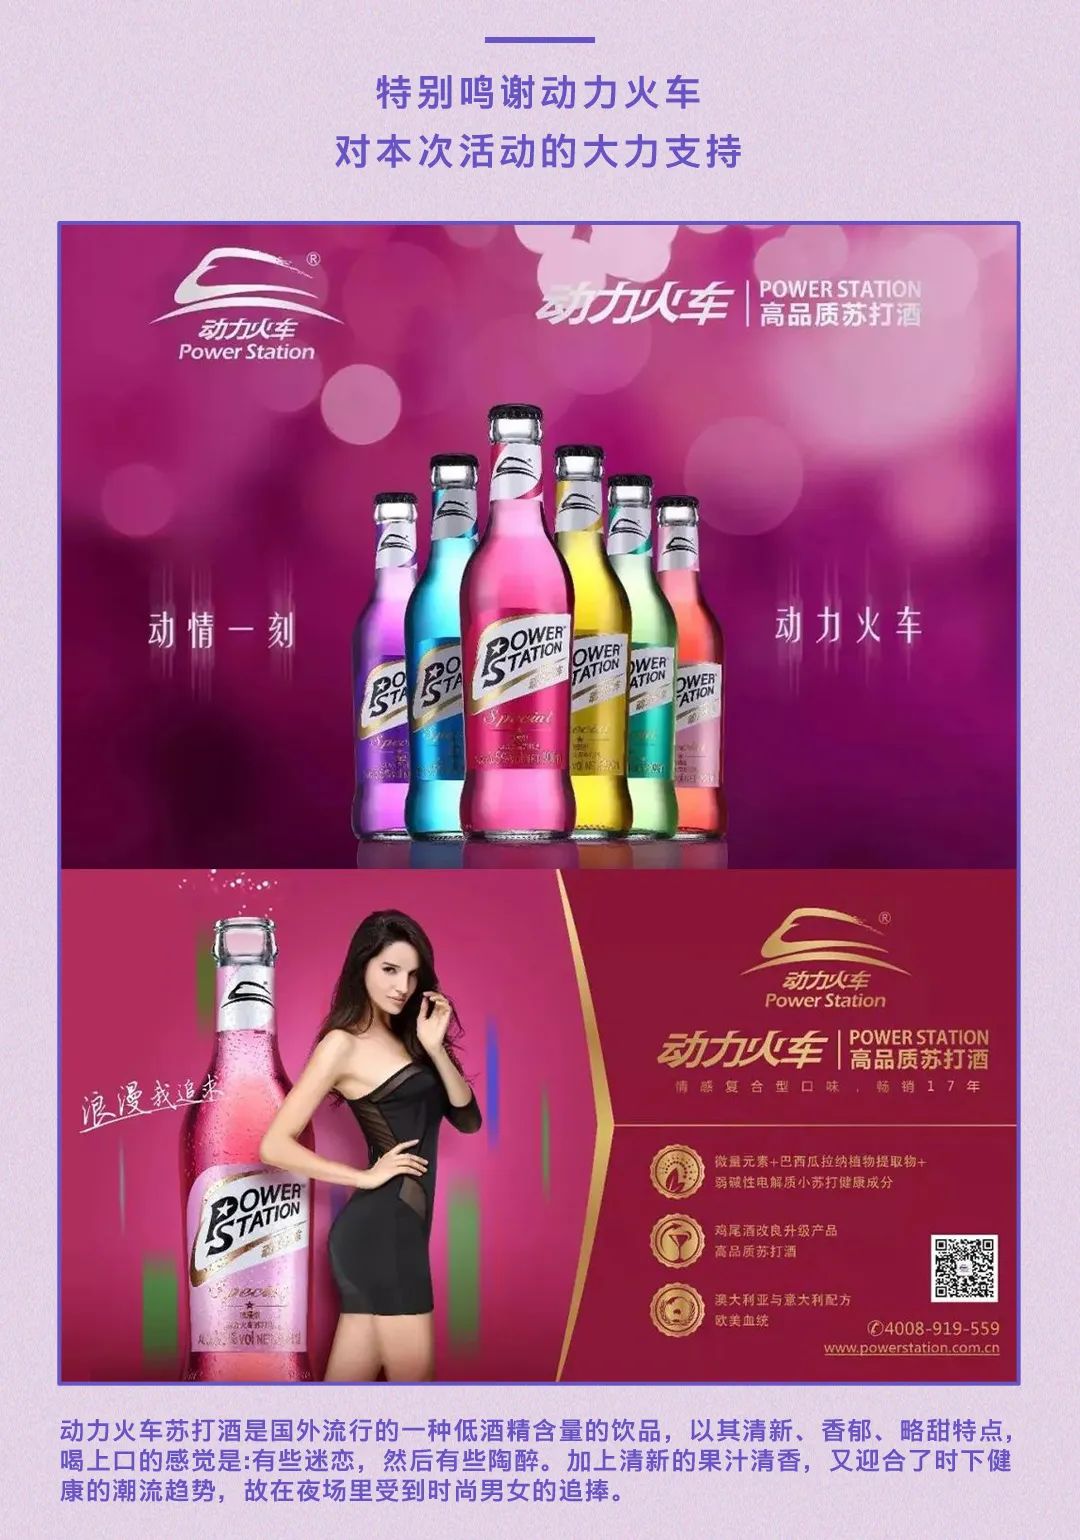 东莞▸𝐊𝐒·𝐏𝐚𝐫𝐭𝐲 10.28 动力火车特邀《深寒》主演丨亚洲小姐#思咏 𝙎𝙞𝙧𝙮 𝙃𝙪𝙚𝙣-大朗KS Party派对酒吧